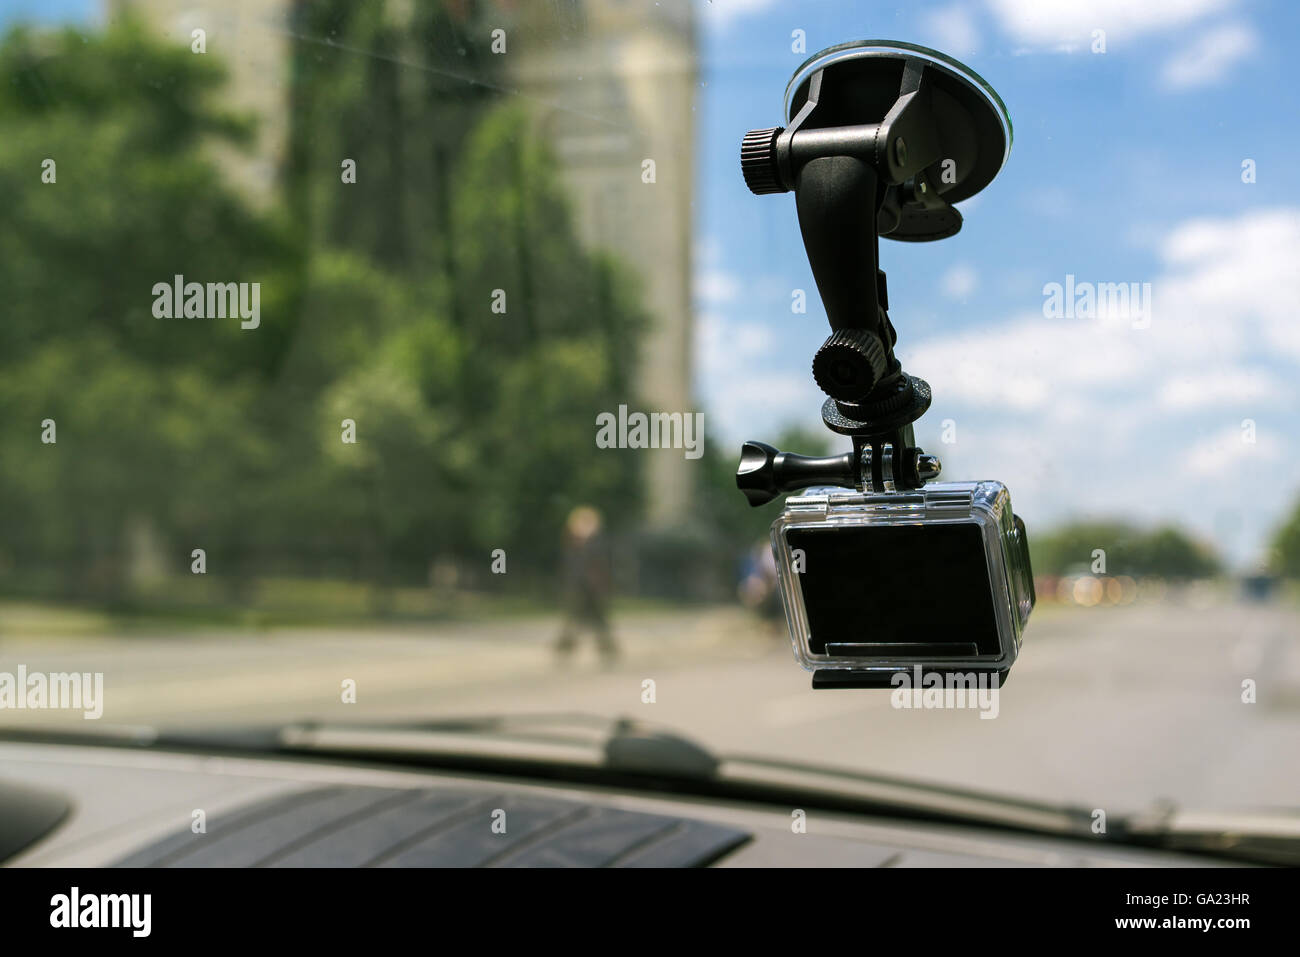 Caméra d'action avec le bouchon d'aspiration pare-brise de voiture fenêtre, filmer l'expérience de conduite dans le trafic urbain Environnement Banque D'Images